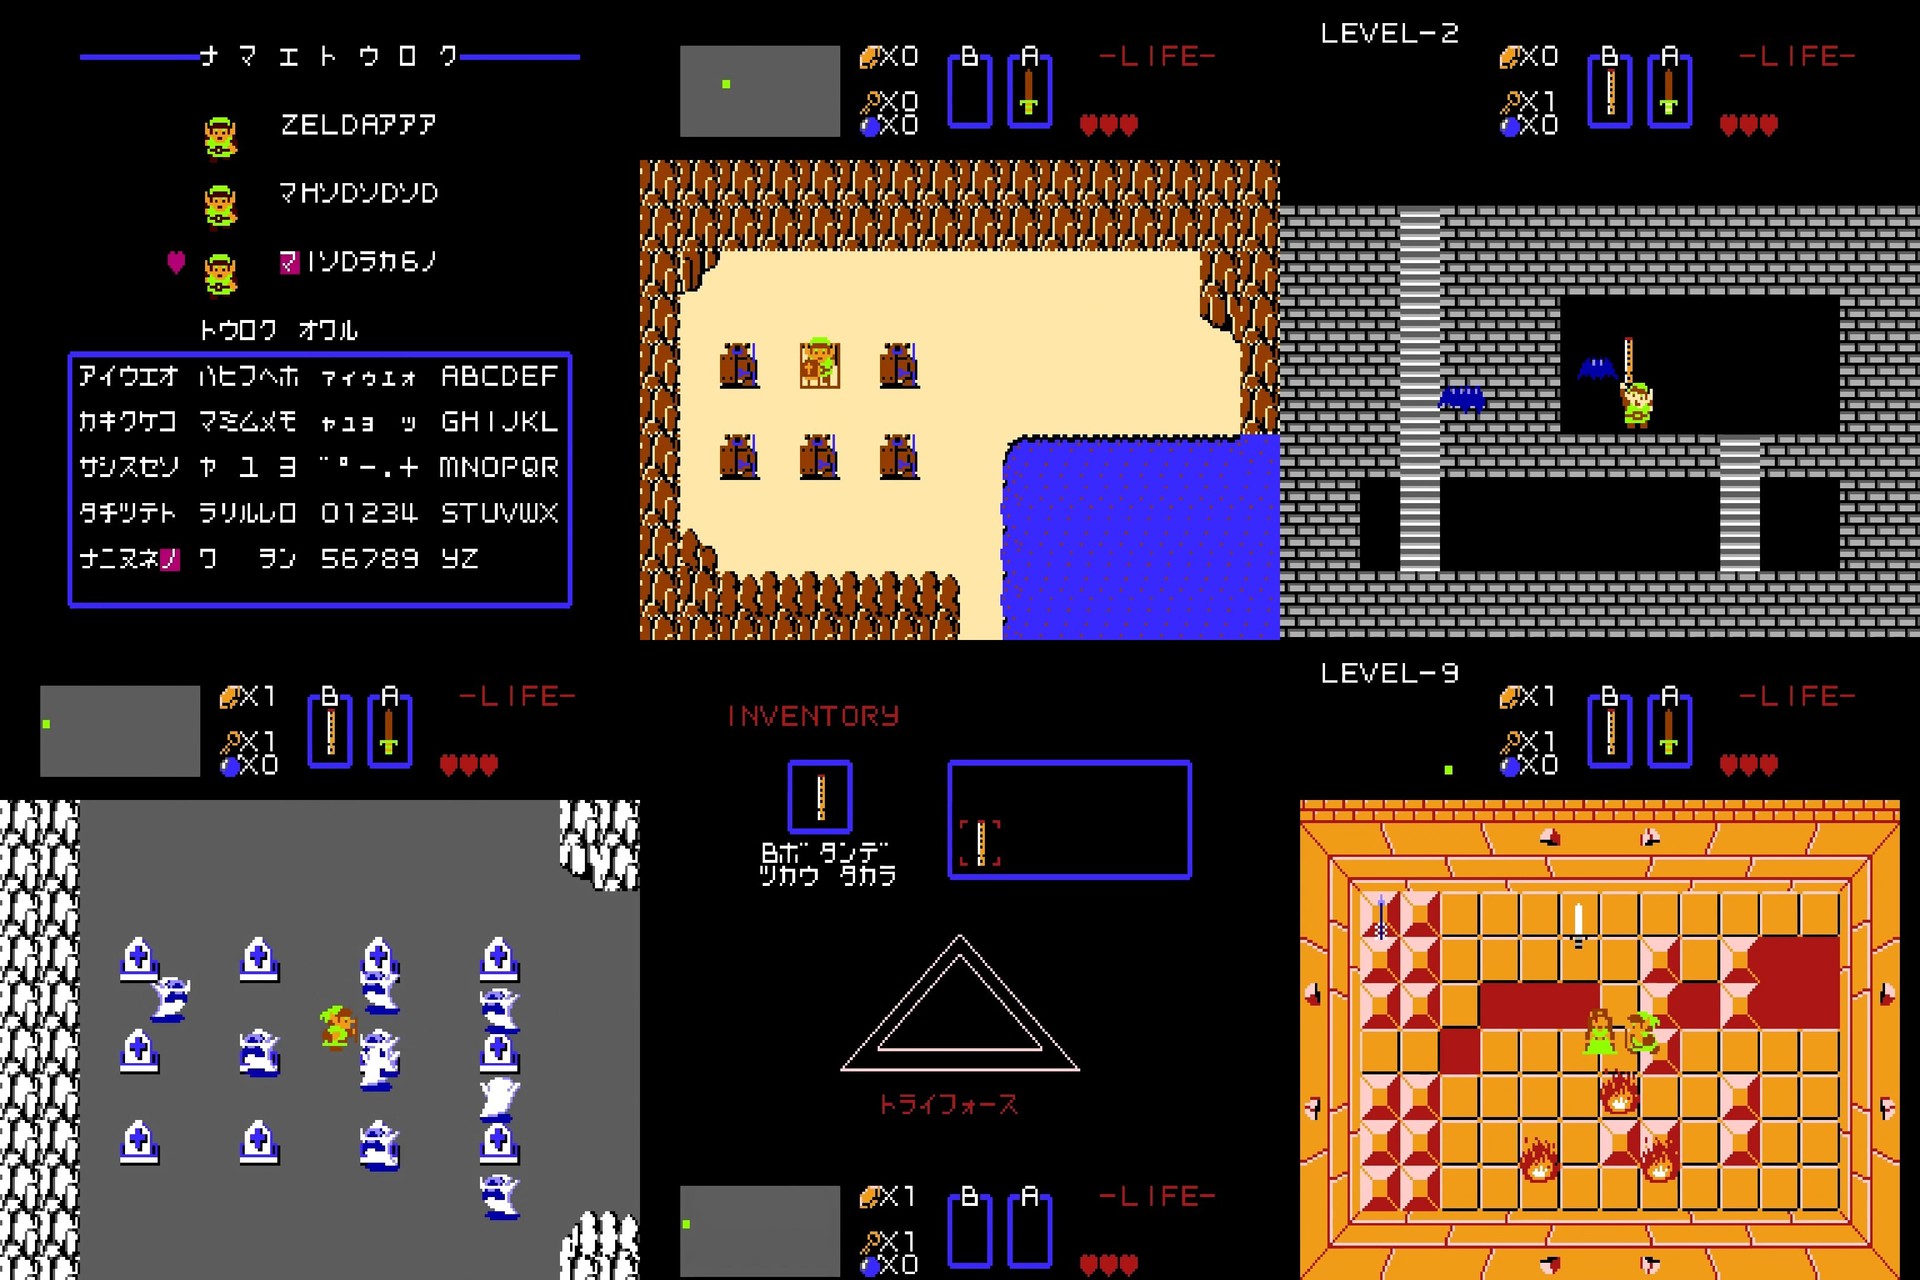 Спидран Legend of Zelda путём манипуляций памятью игры - 2